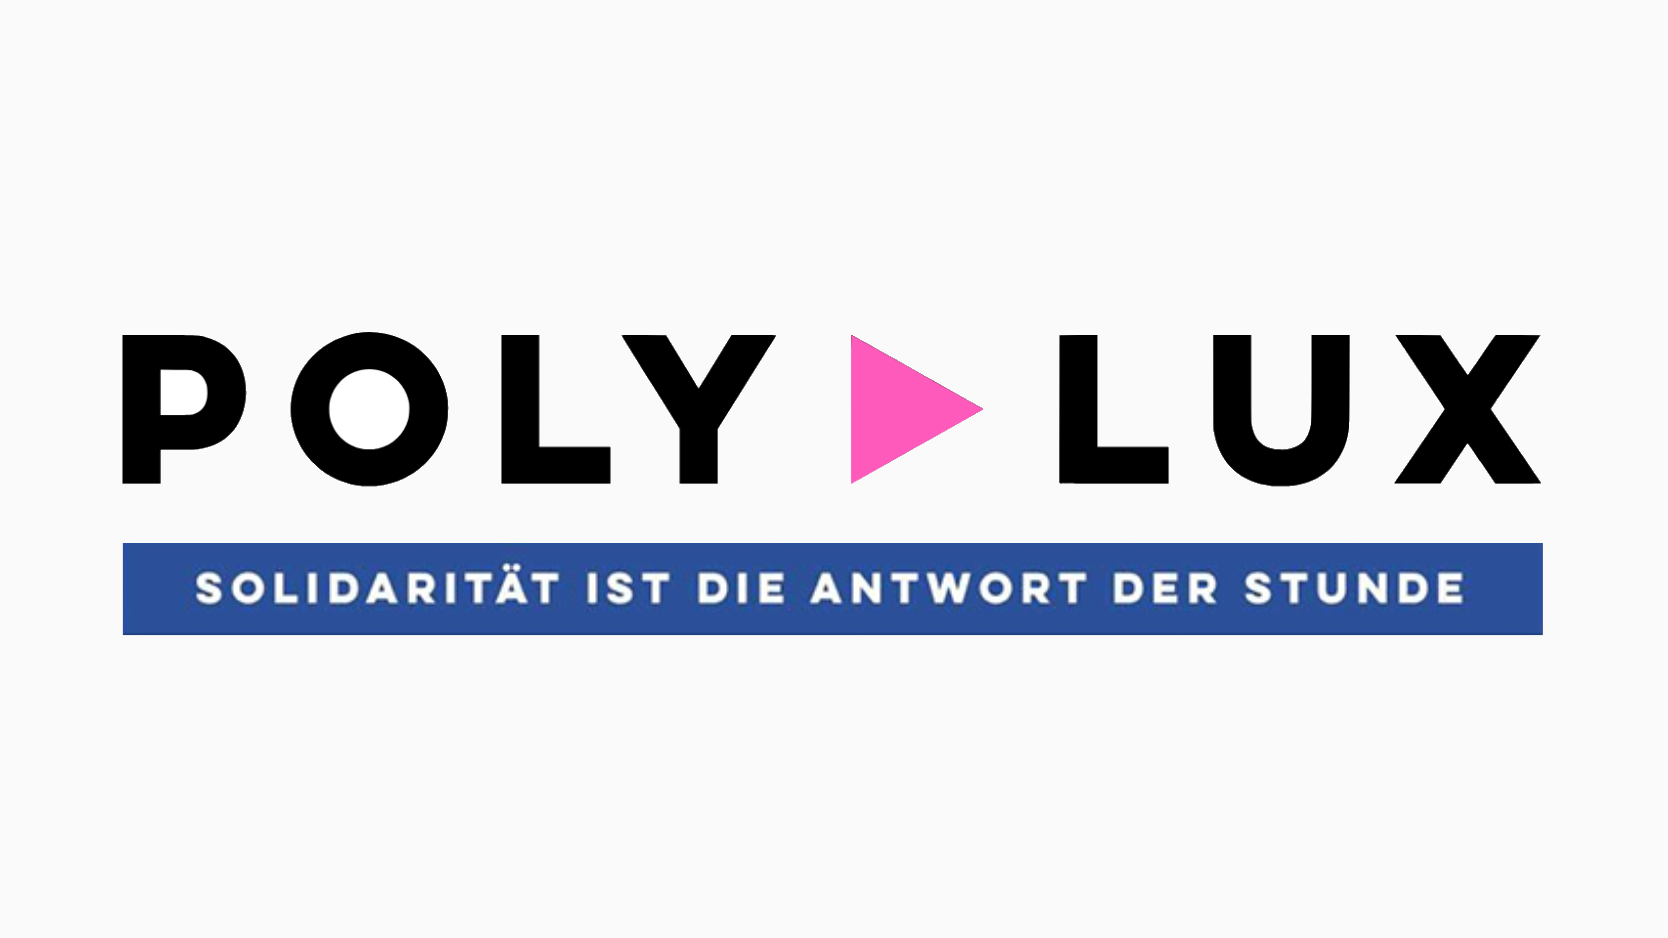 Logo mit Text: Polylux - Solidarität ist die Antwort der Stunde